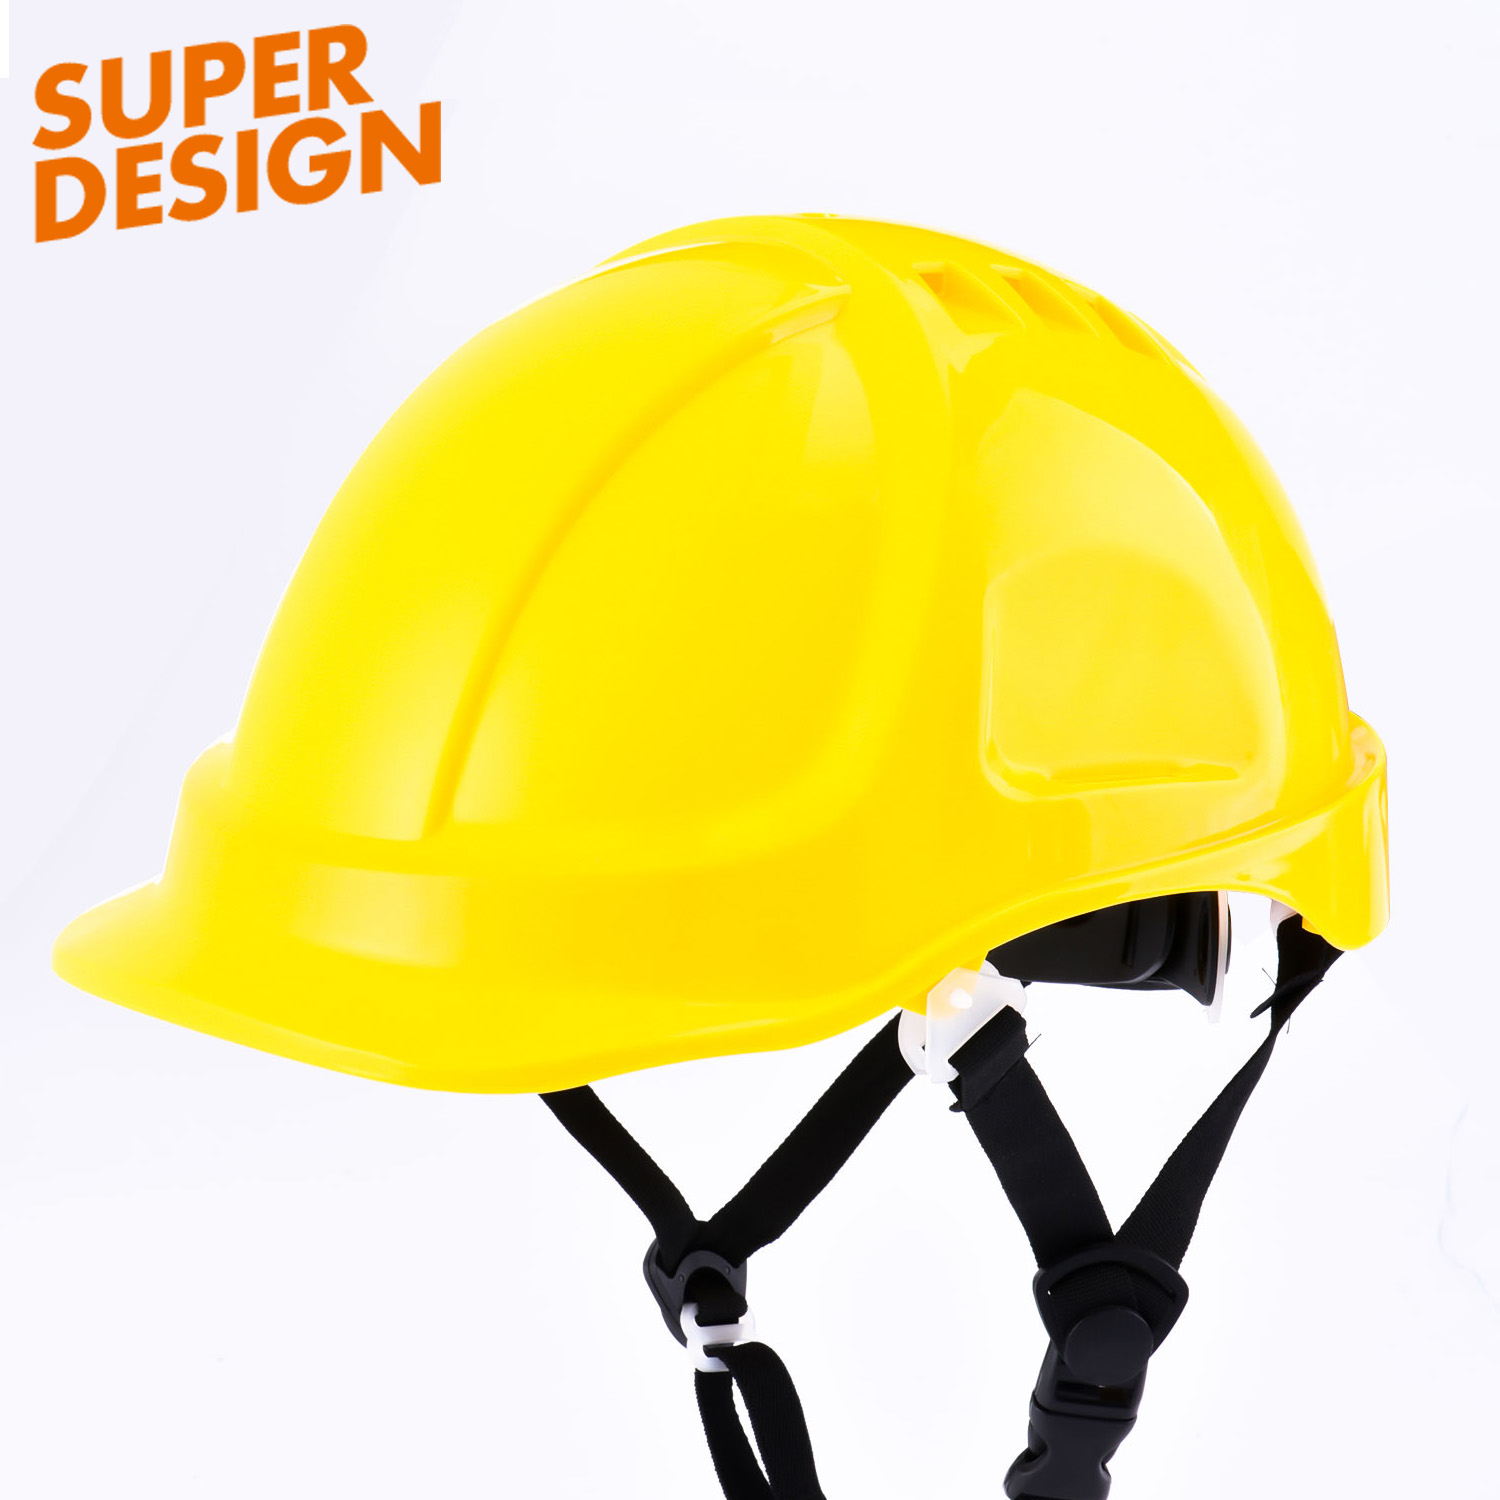 Industrial Safety Helmet W-037 Orange